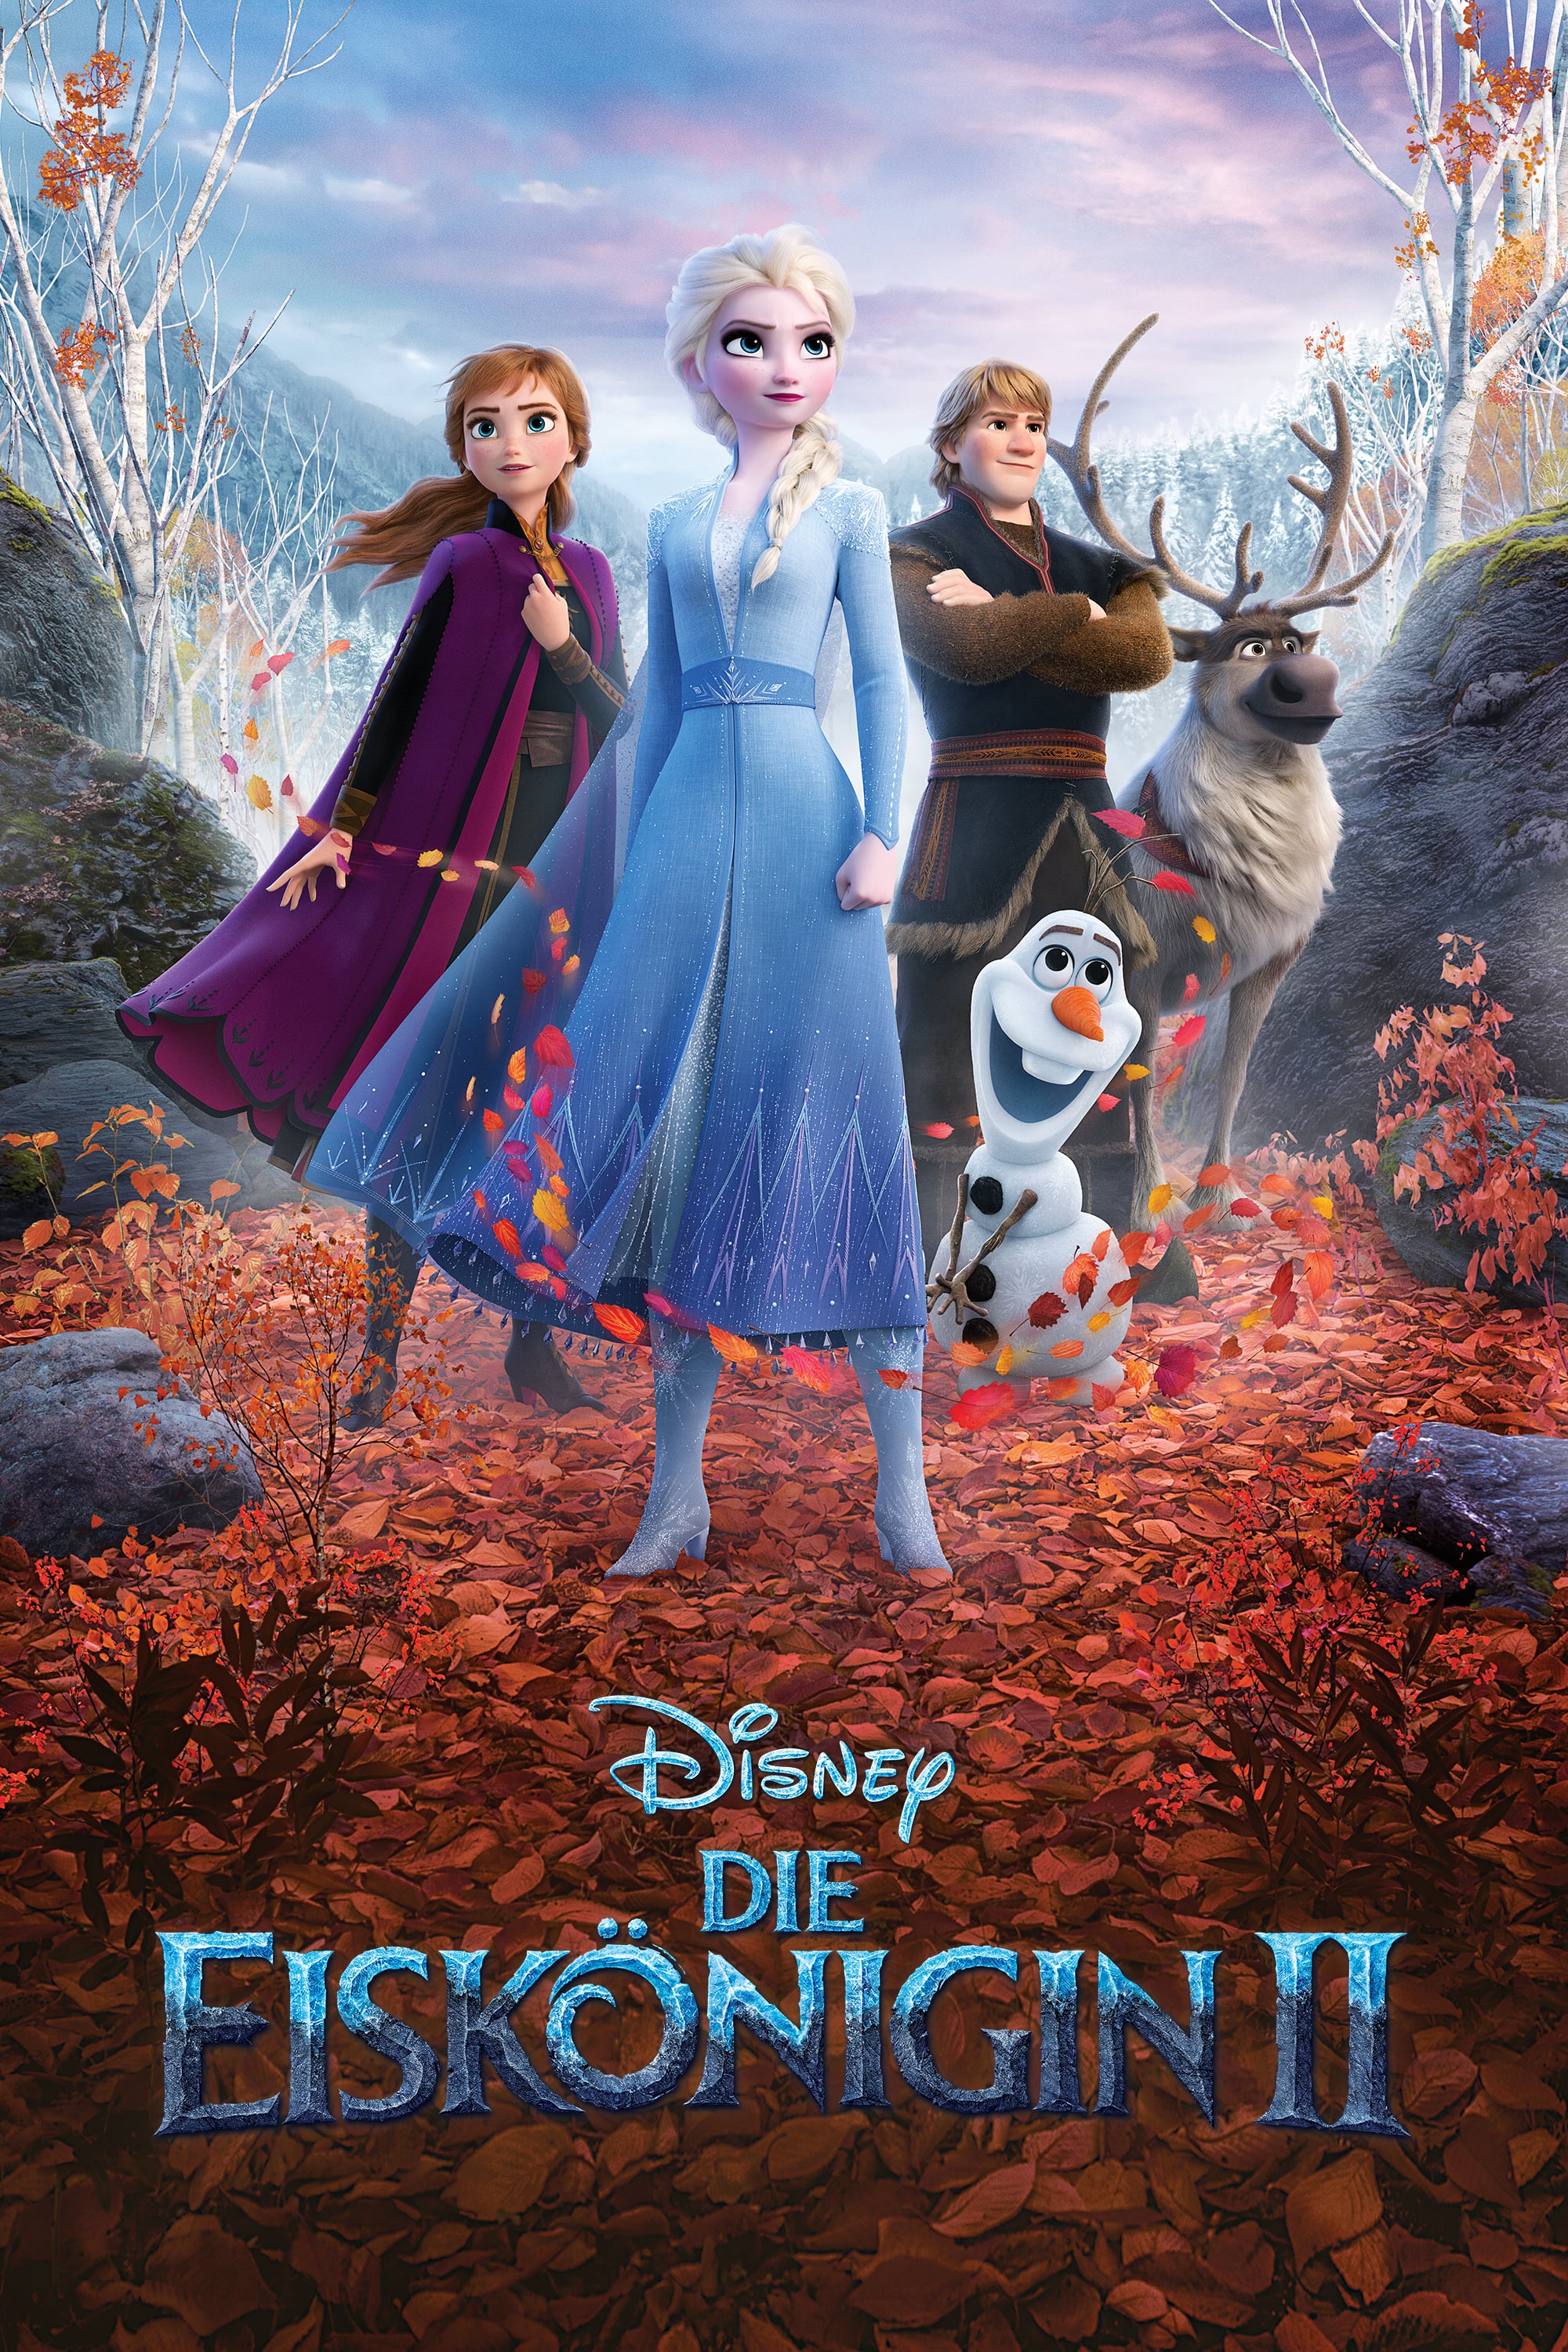 Plakat von "Die Eiskönigin 2"